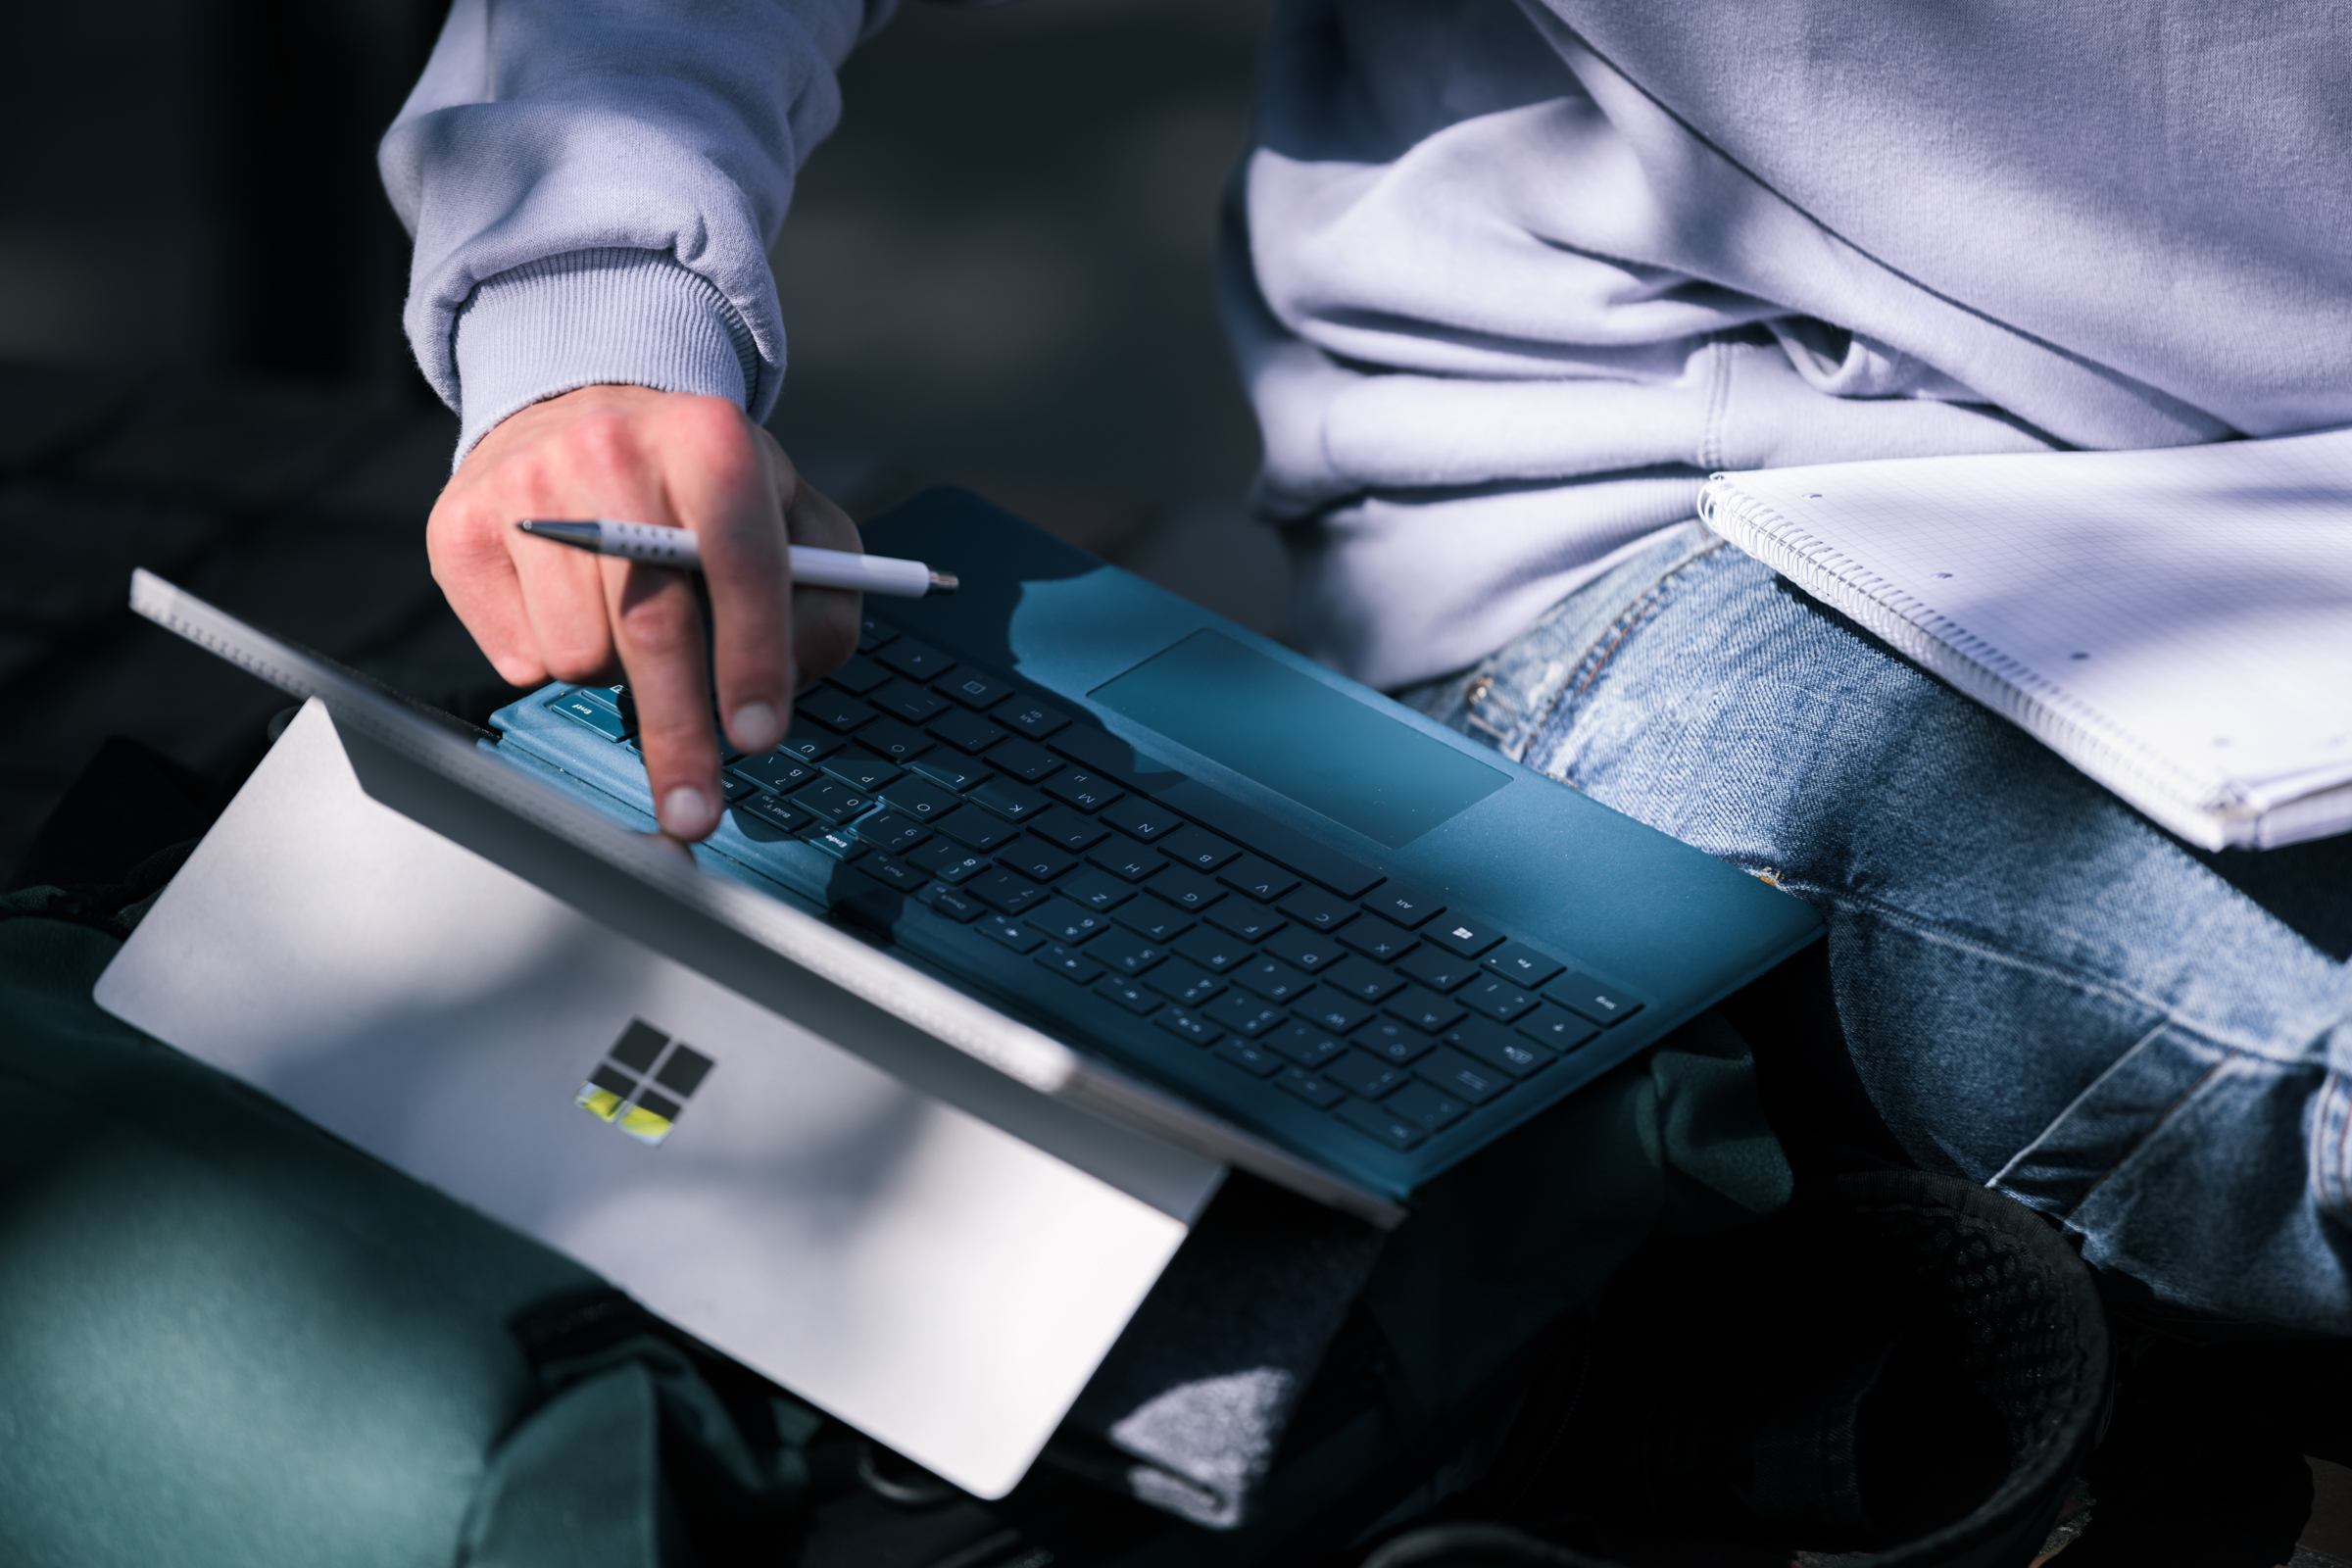 Zu sehen ist eine Hand mit einem zwischen Zeige- und Mittelfinger eingeklemmten Stift, die auf den Bildschirm eines Laptops deutet.